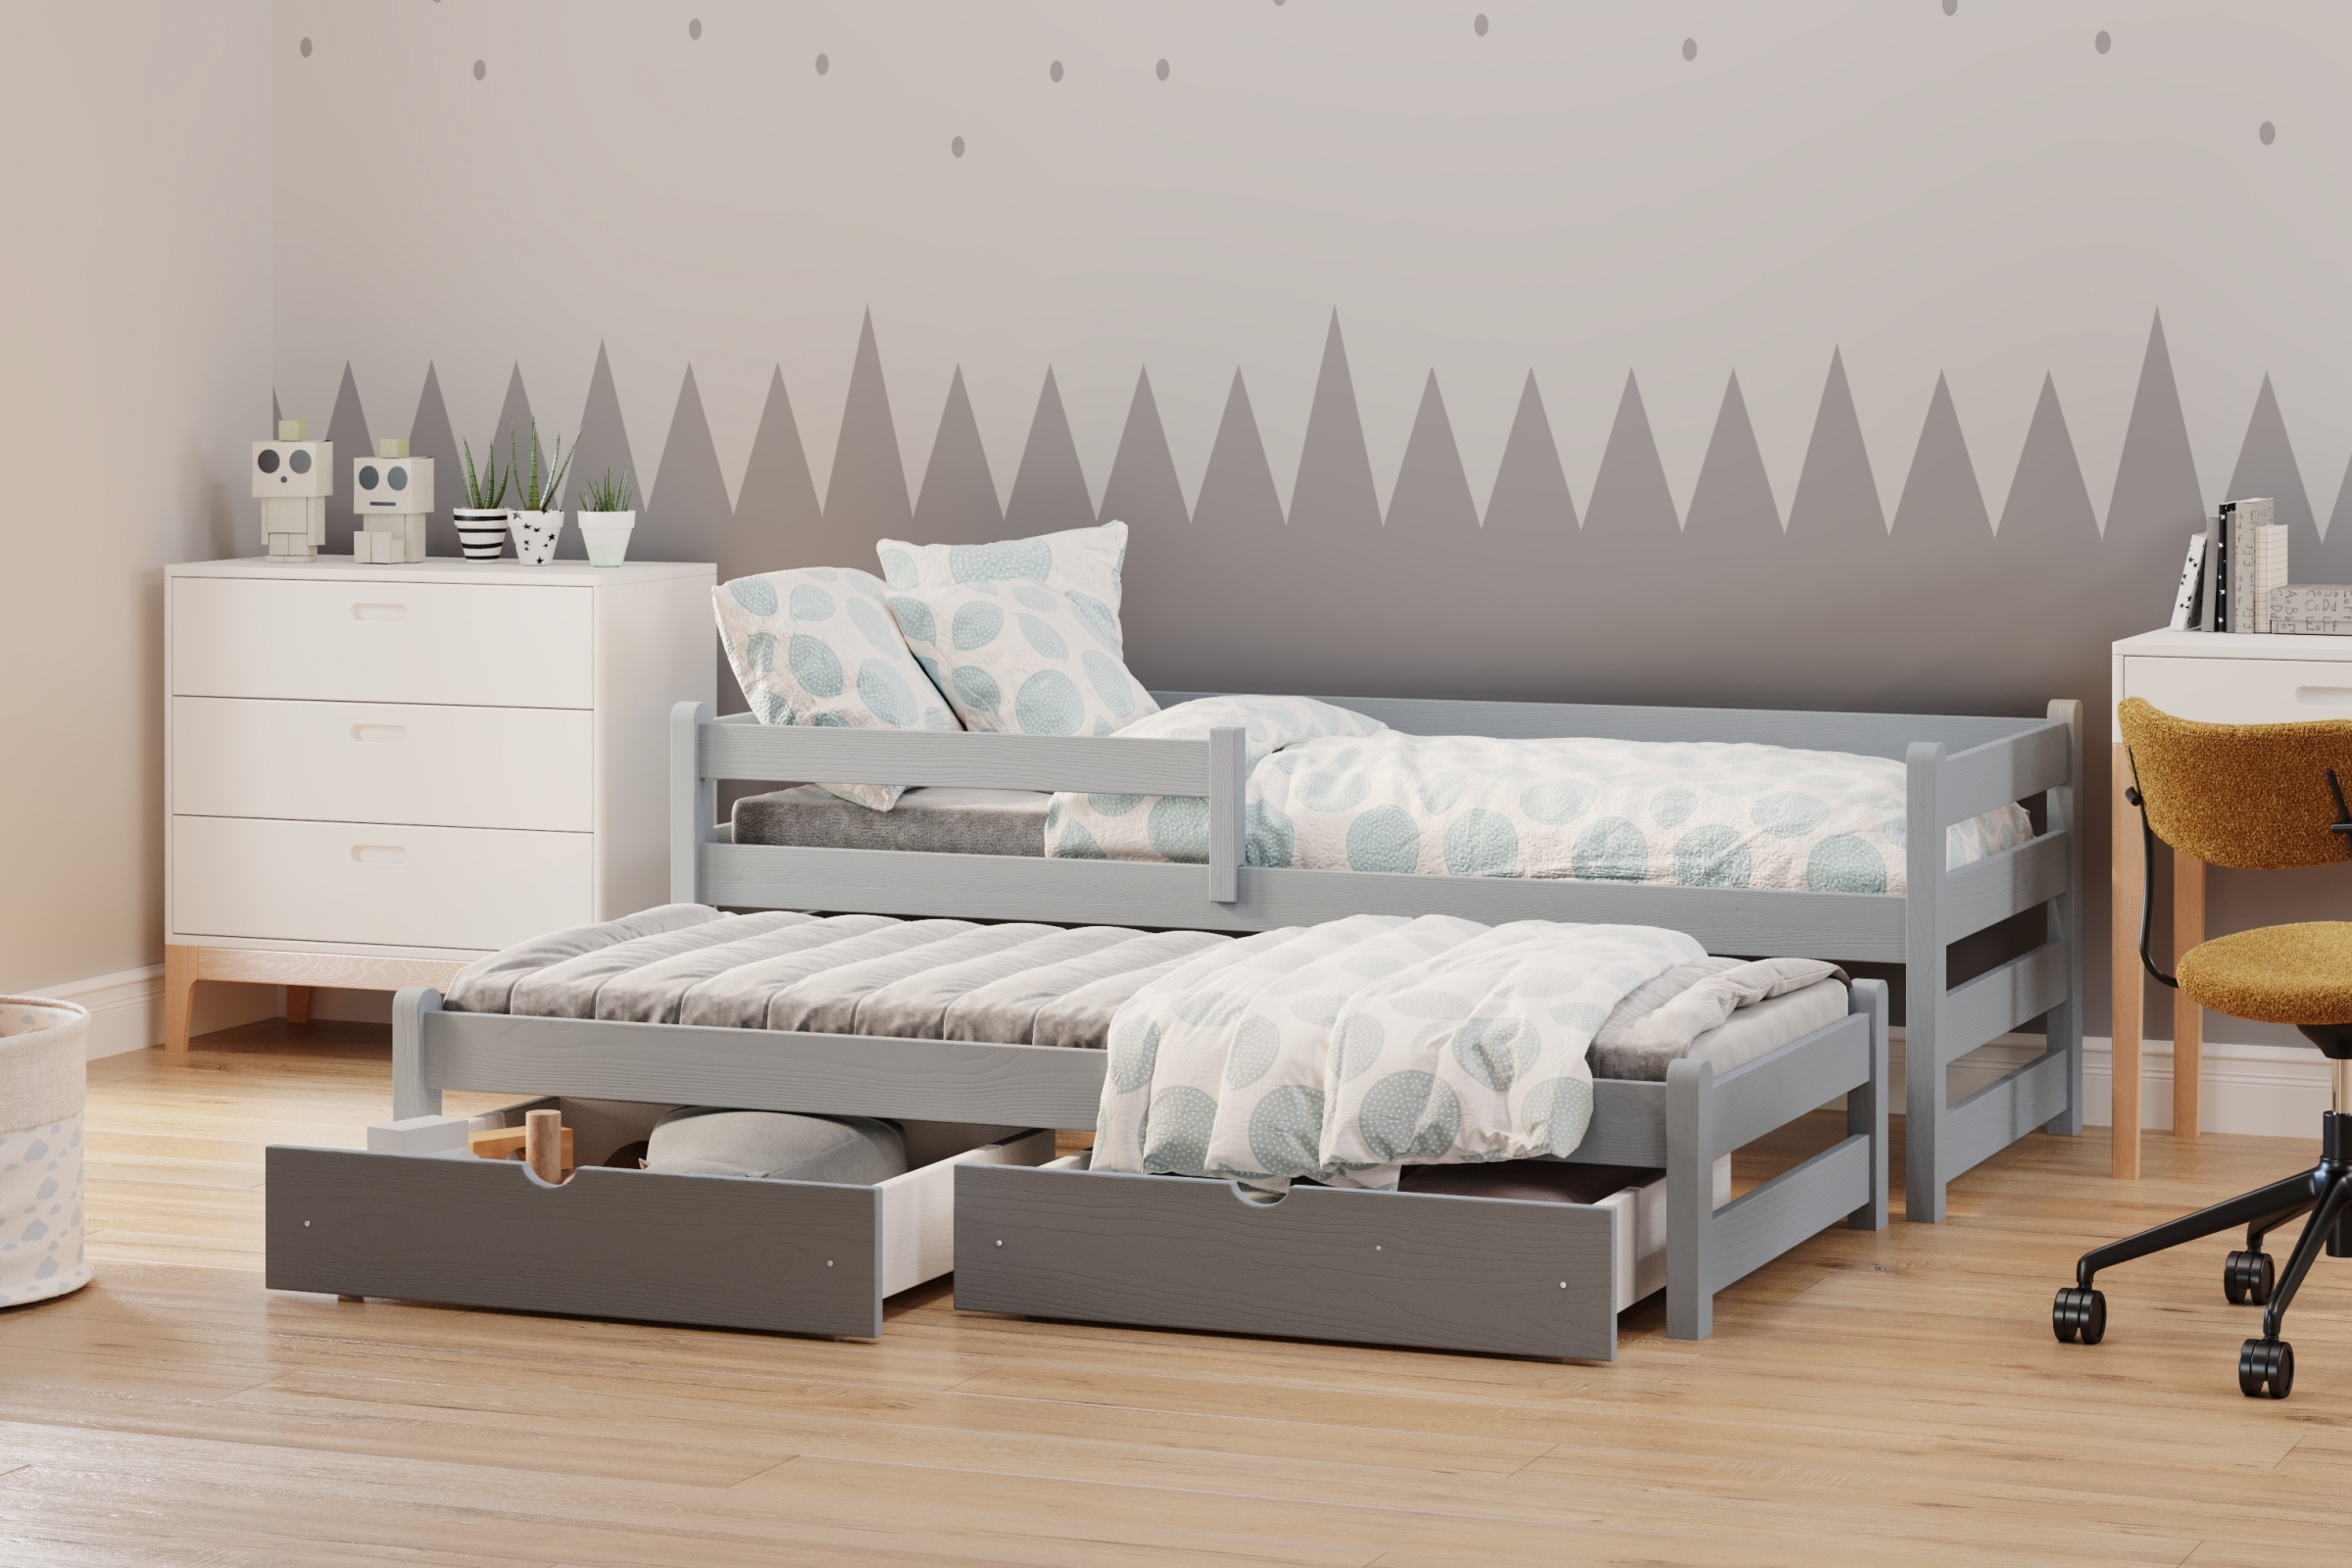 Detská posteľ prízemná s výsuvným lôžkom Alis DPV 001 - šedý, 80x160 Posteľ prízemná s výsuvným lôžkom Alis - Farba šedý - vizualizácia